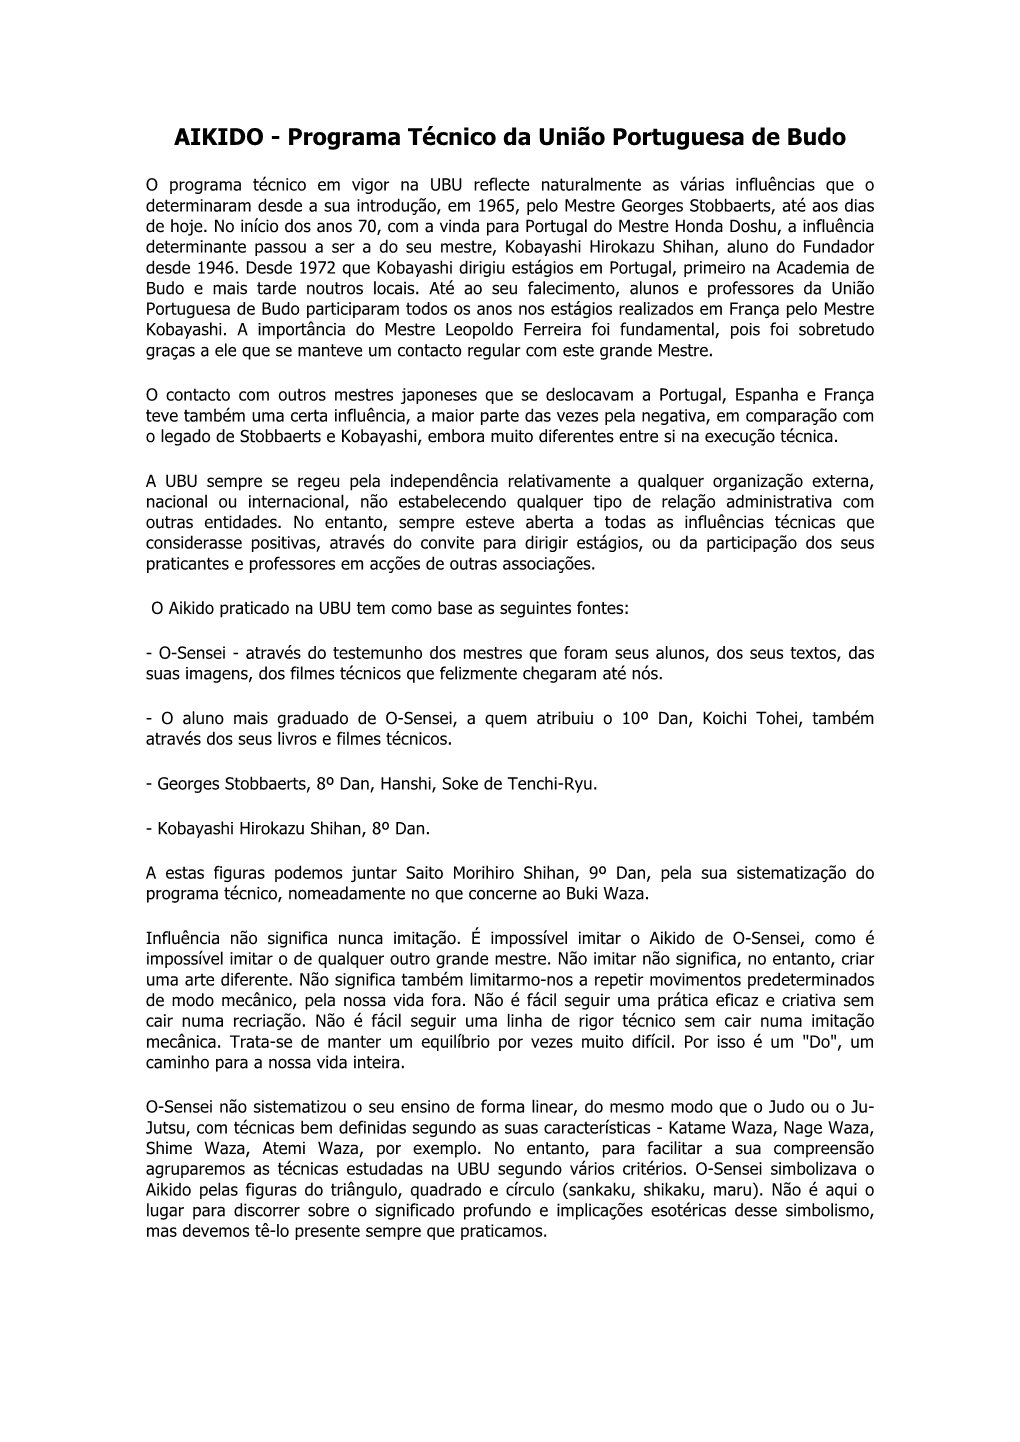 AIKIDO - Programa Técnico Da União Portuguesa De Budo